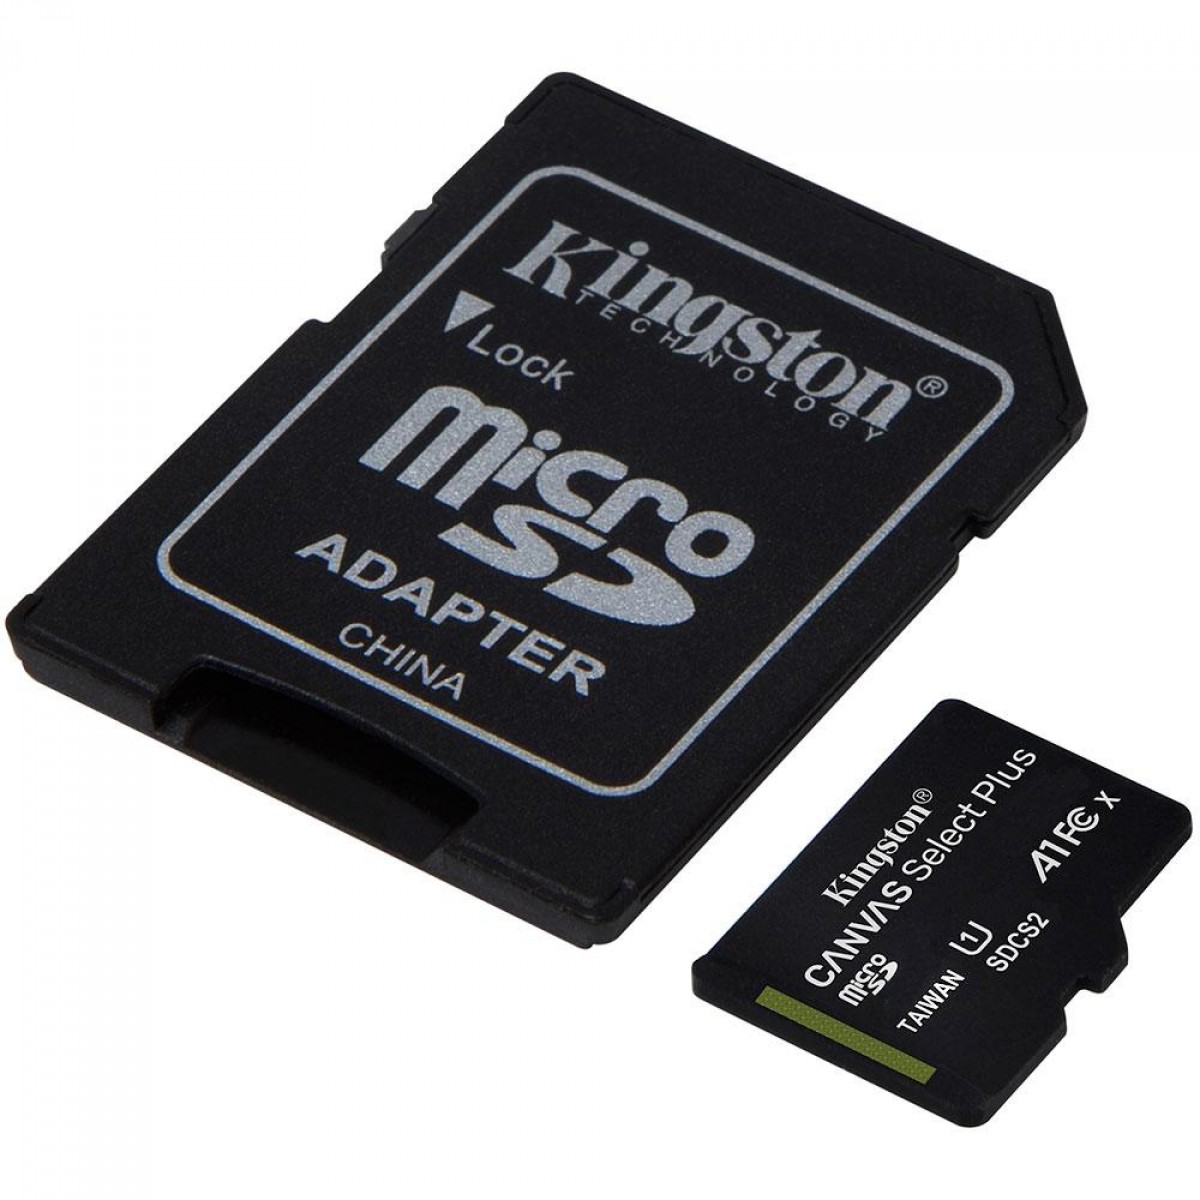 Cartão de Memória Kingston Canvas Select Plus, Micro SDHC 16GB, V10, SDCS2/16GB - COM ADAPTADOR